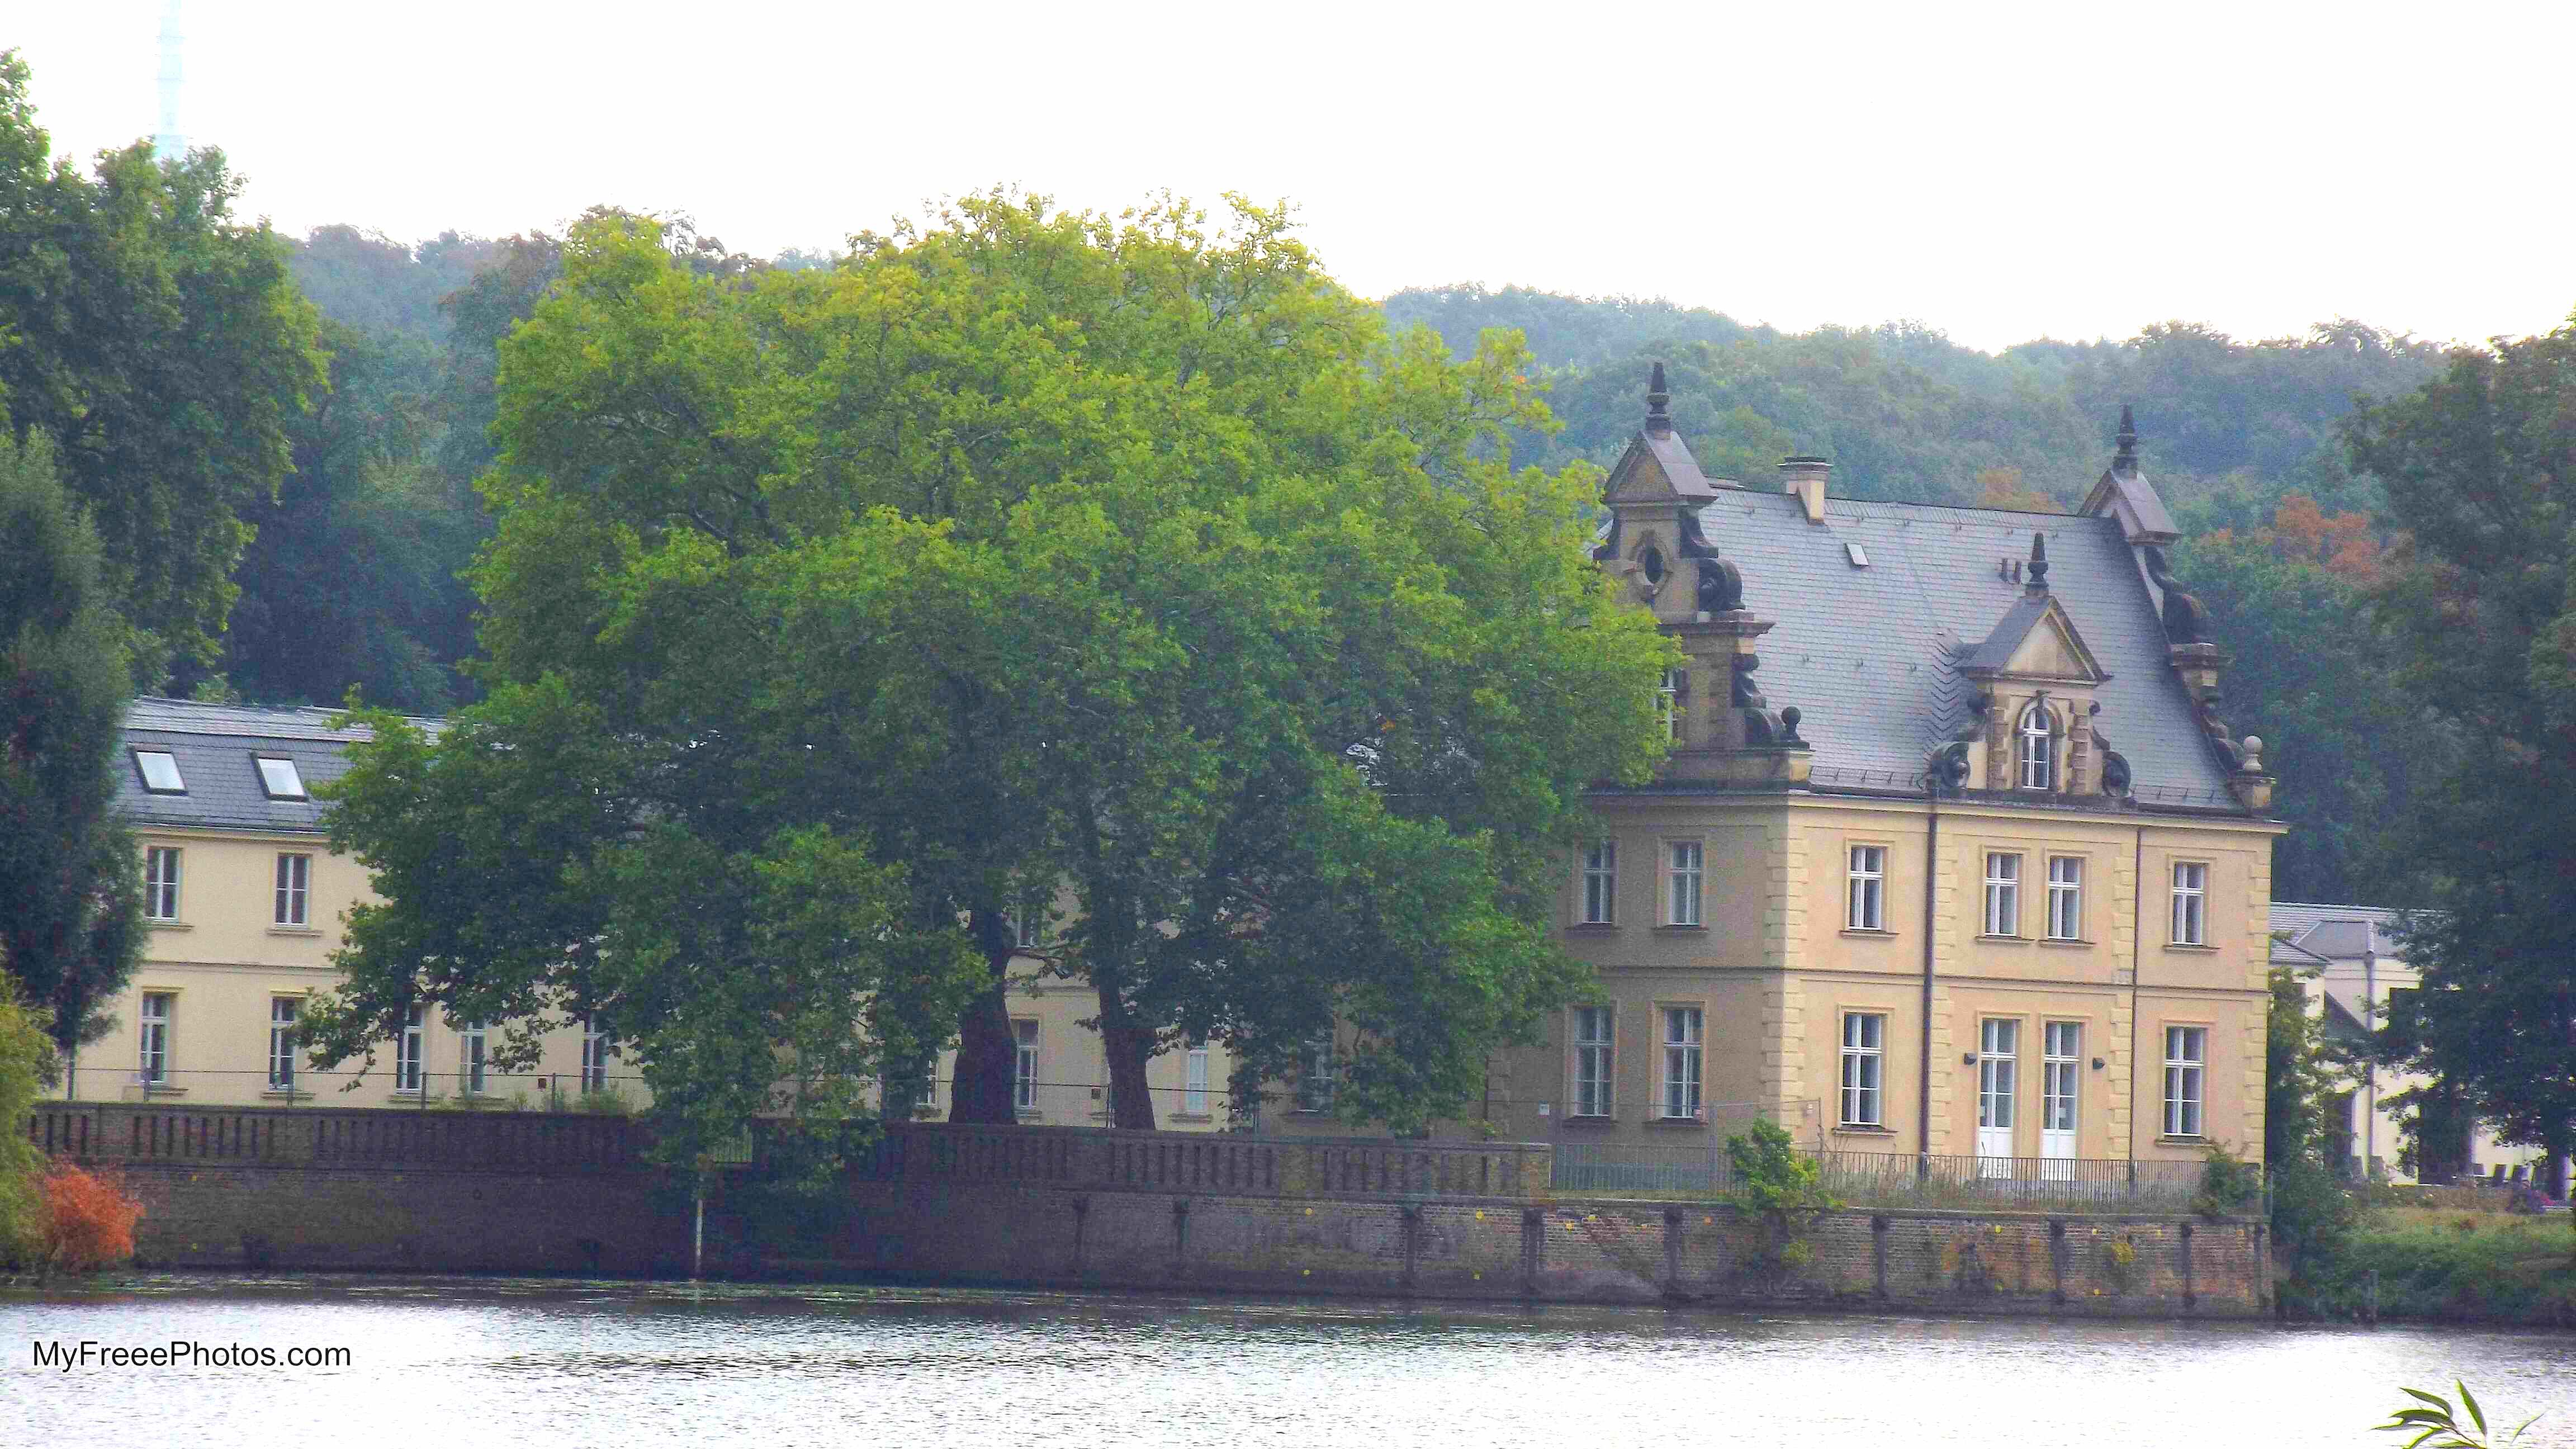 Babelsberg Palace